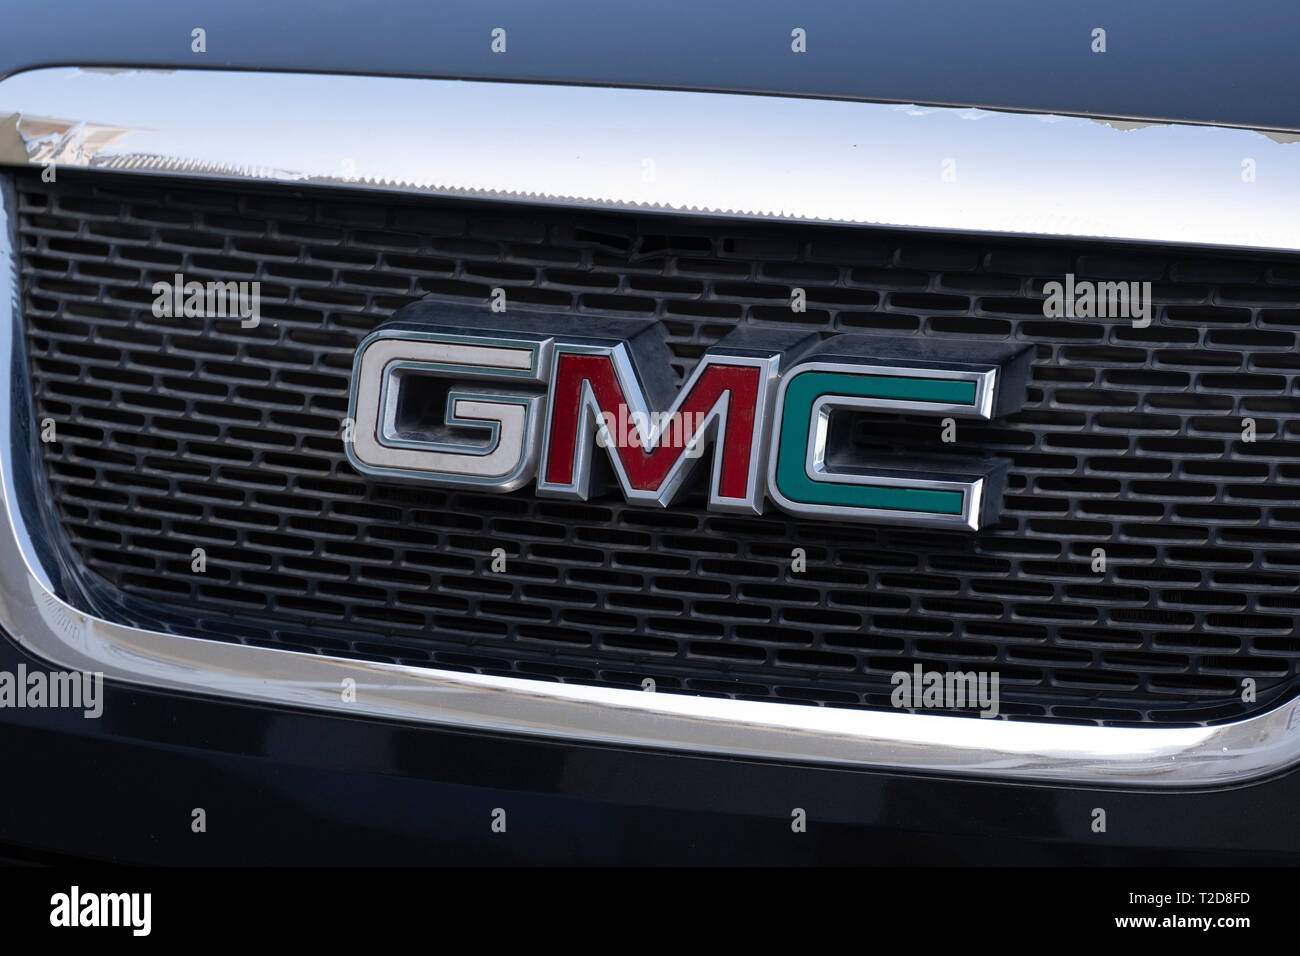 GMC emblem Stock Photo